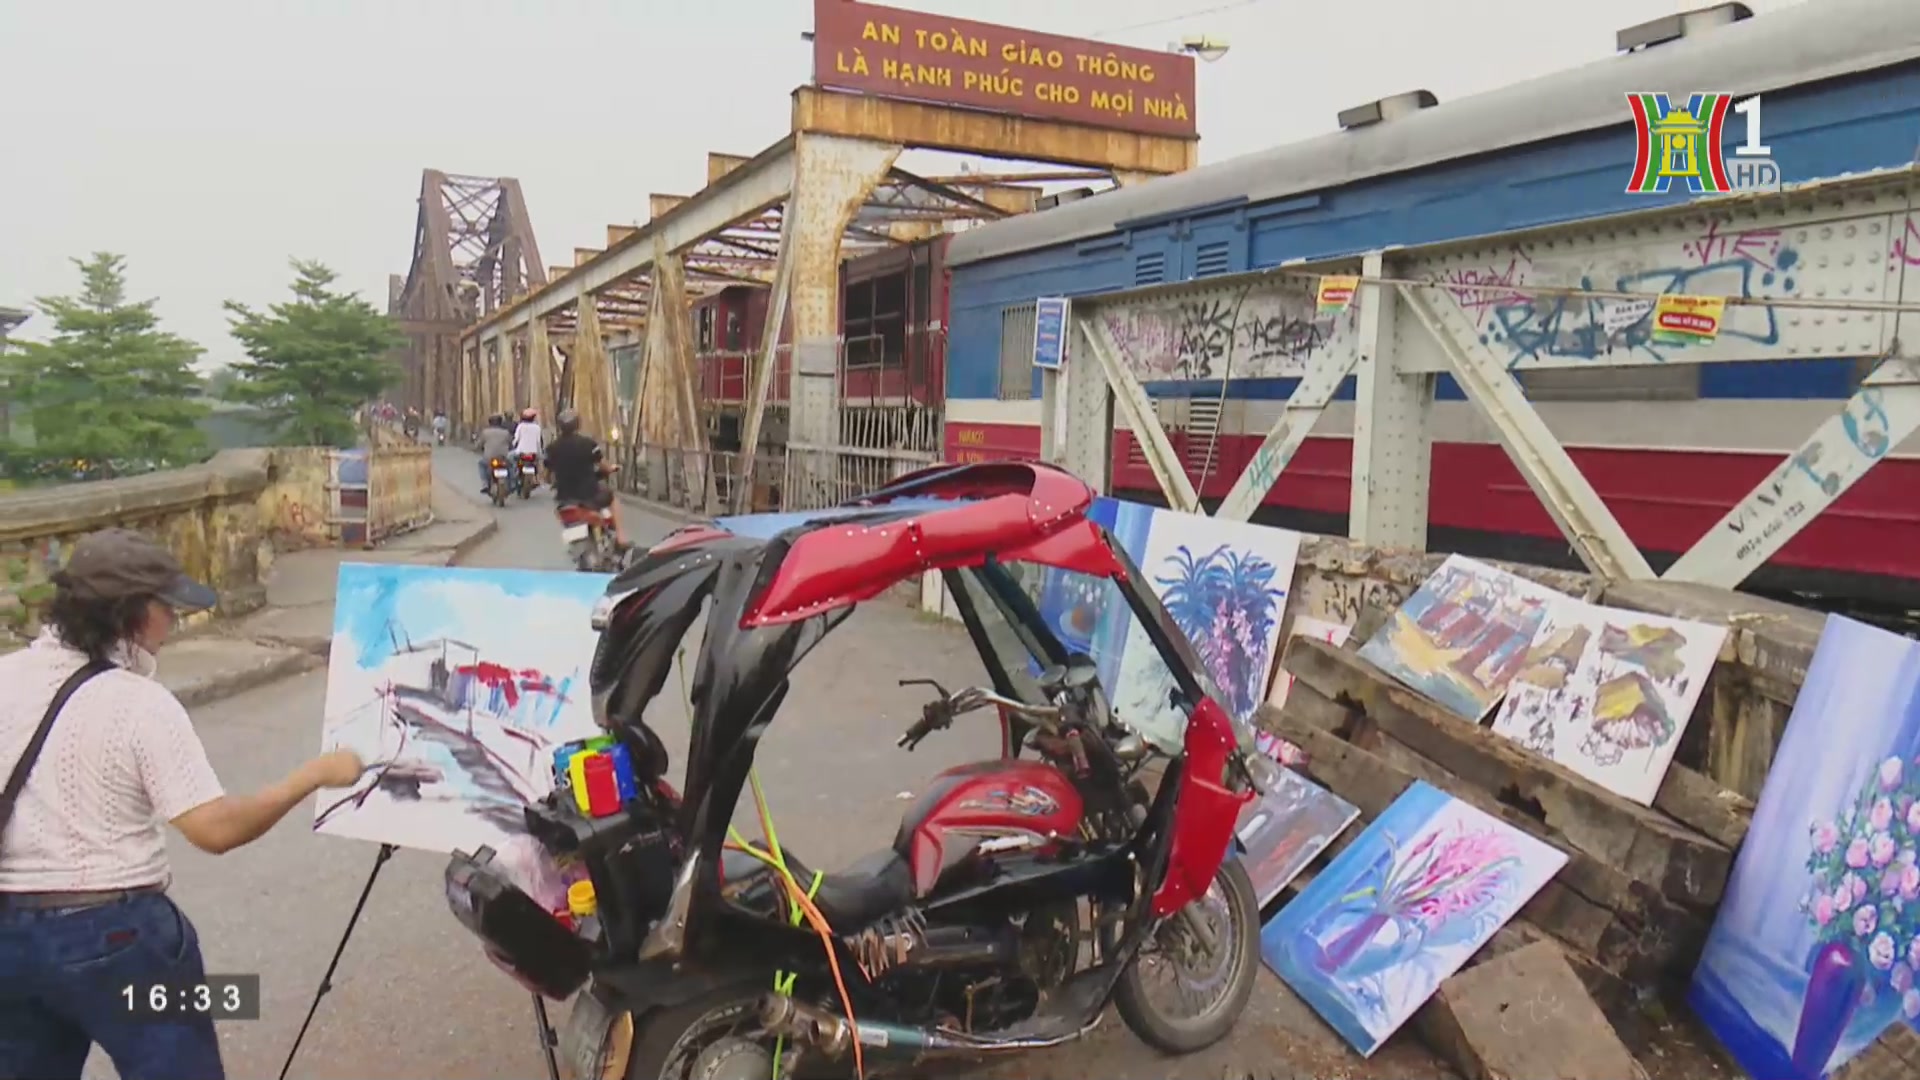 Ký sự Hà Nội: Gánh tranh rong trên cầu Long Biên